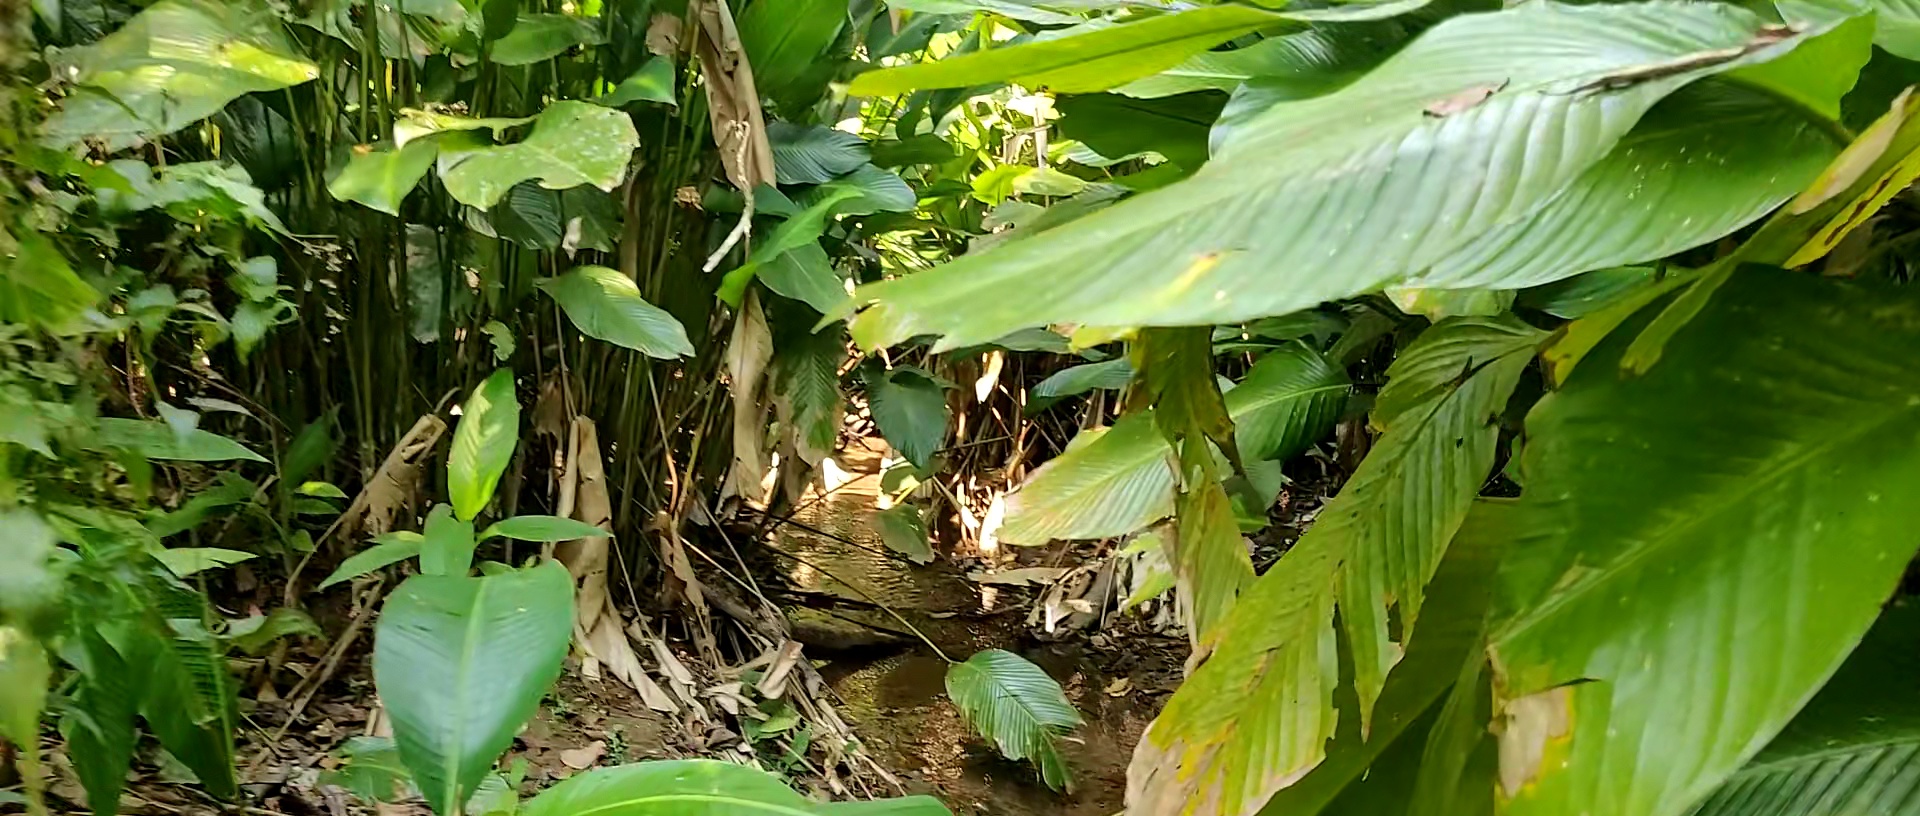 Jungle near Chiang Mai (Doi Suthep area)